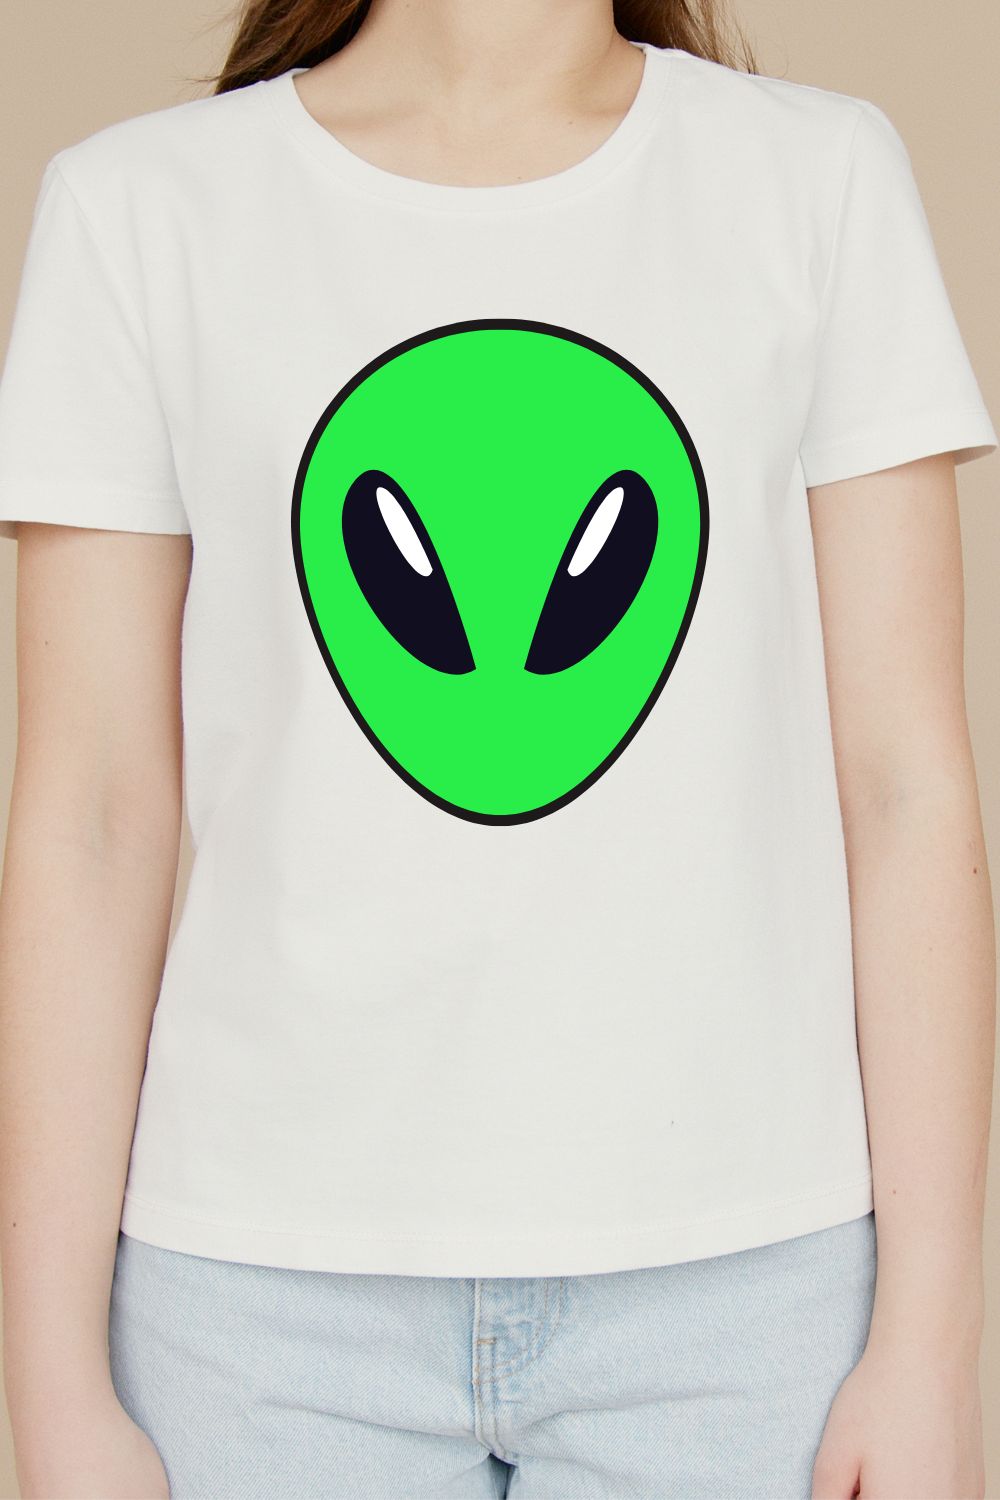 Alien Face design t-shirt pinterest preview image.